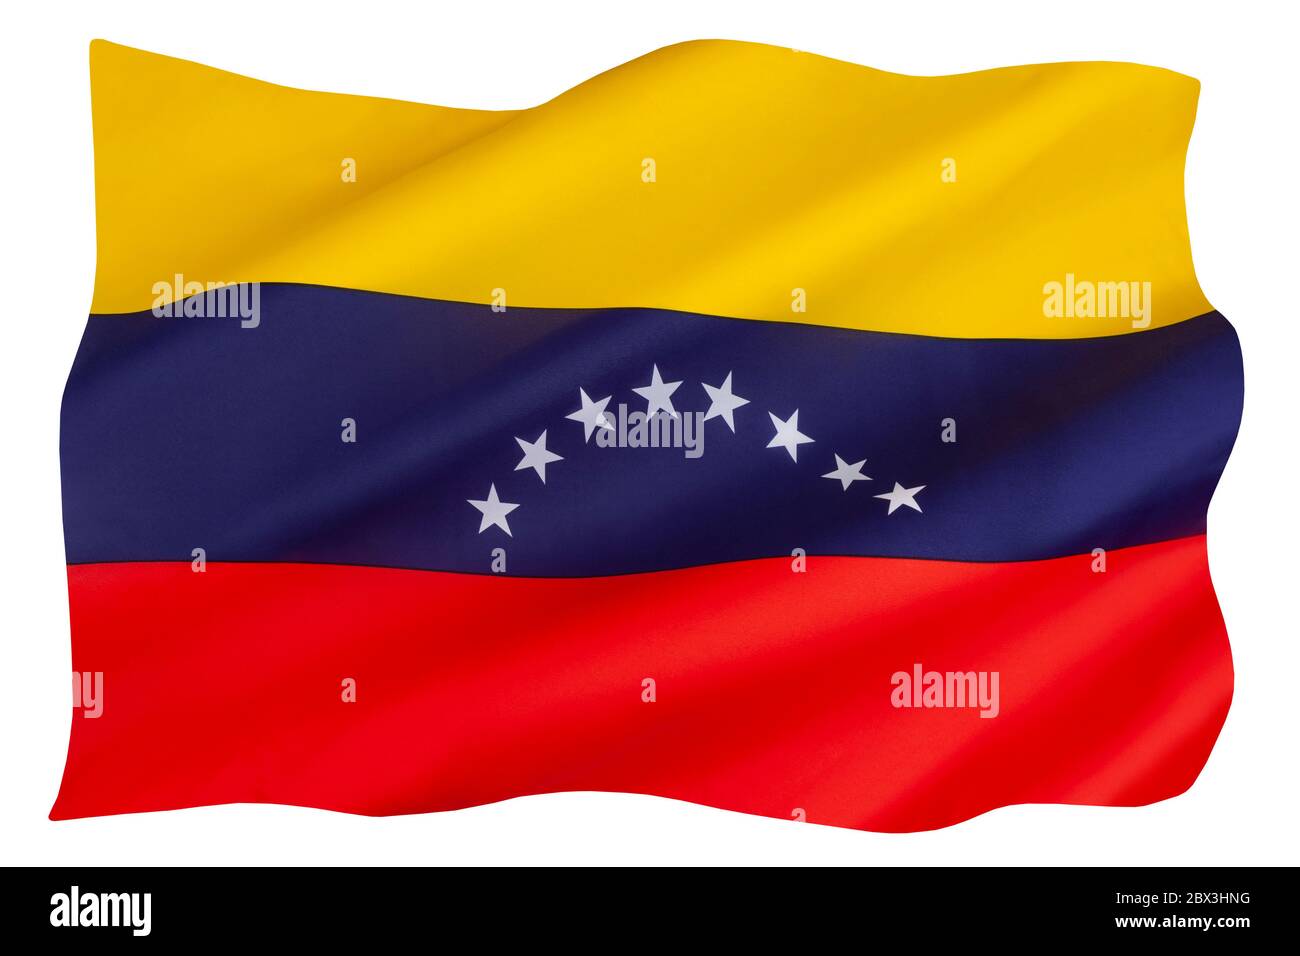 Las actuales 8 estrellas en la bandera de Venezuela fueron añadidas en 2006. El tricolor básico de amarillo, azul y rojo, data de la bandera original introducida en Foto de stock